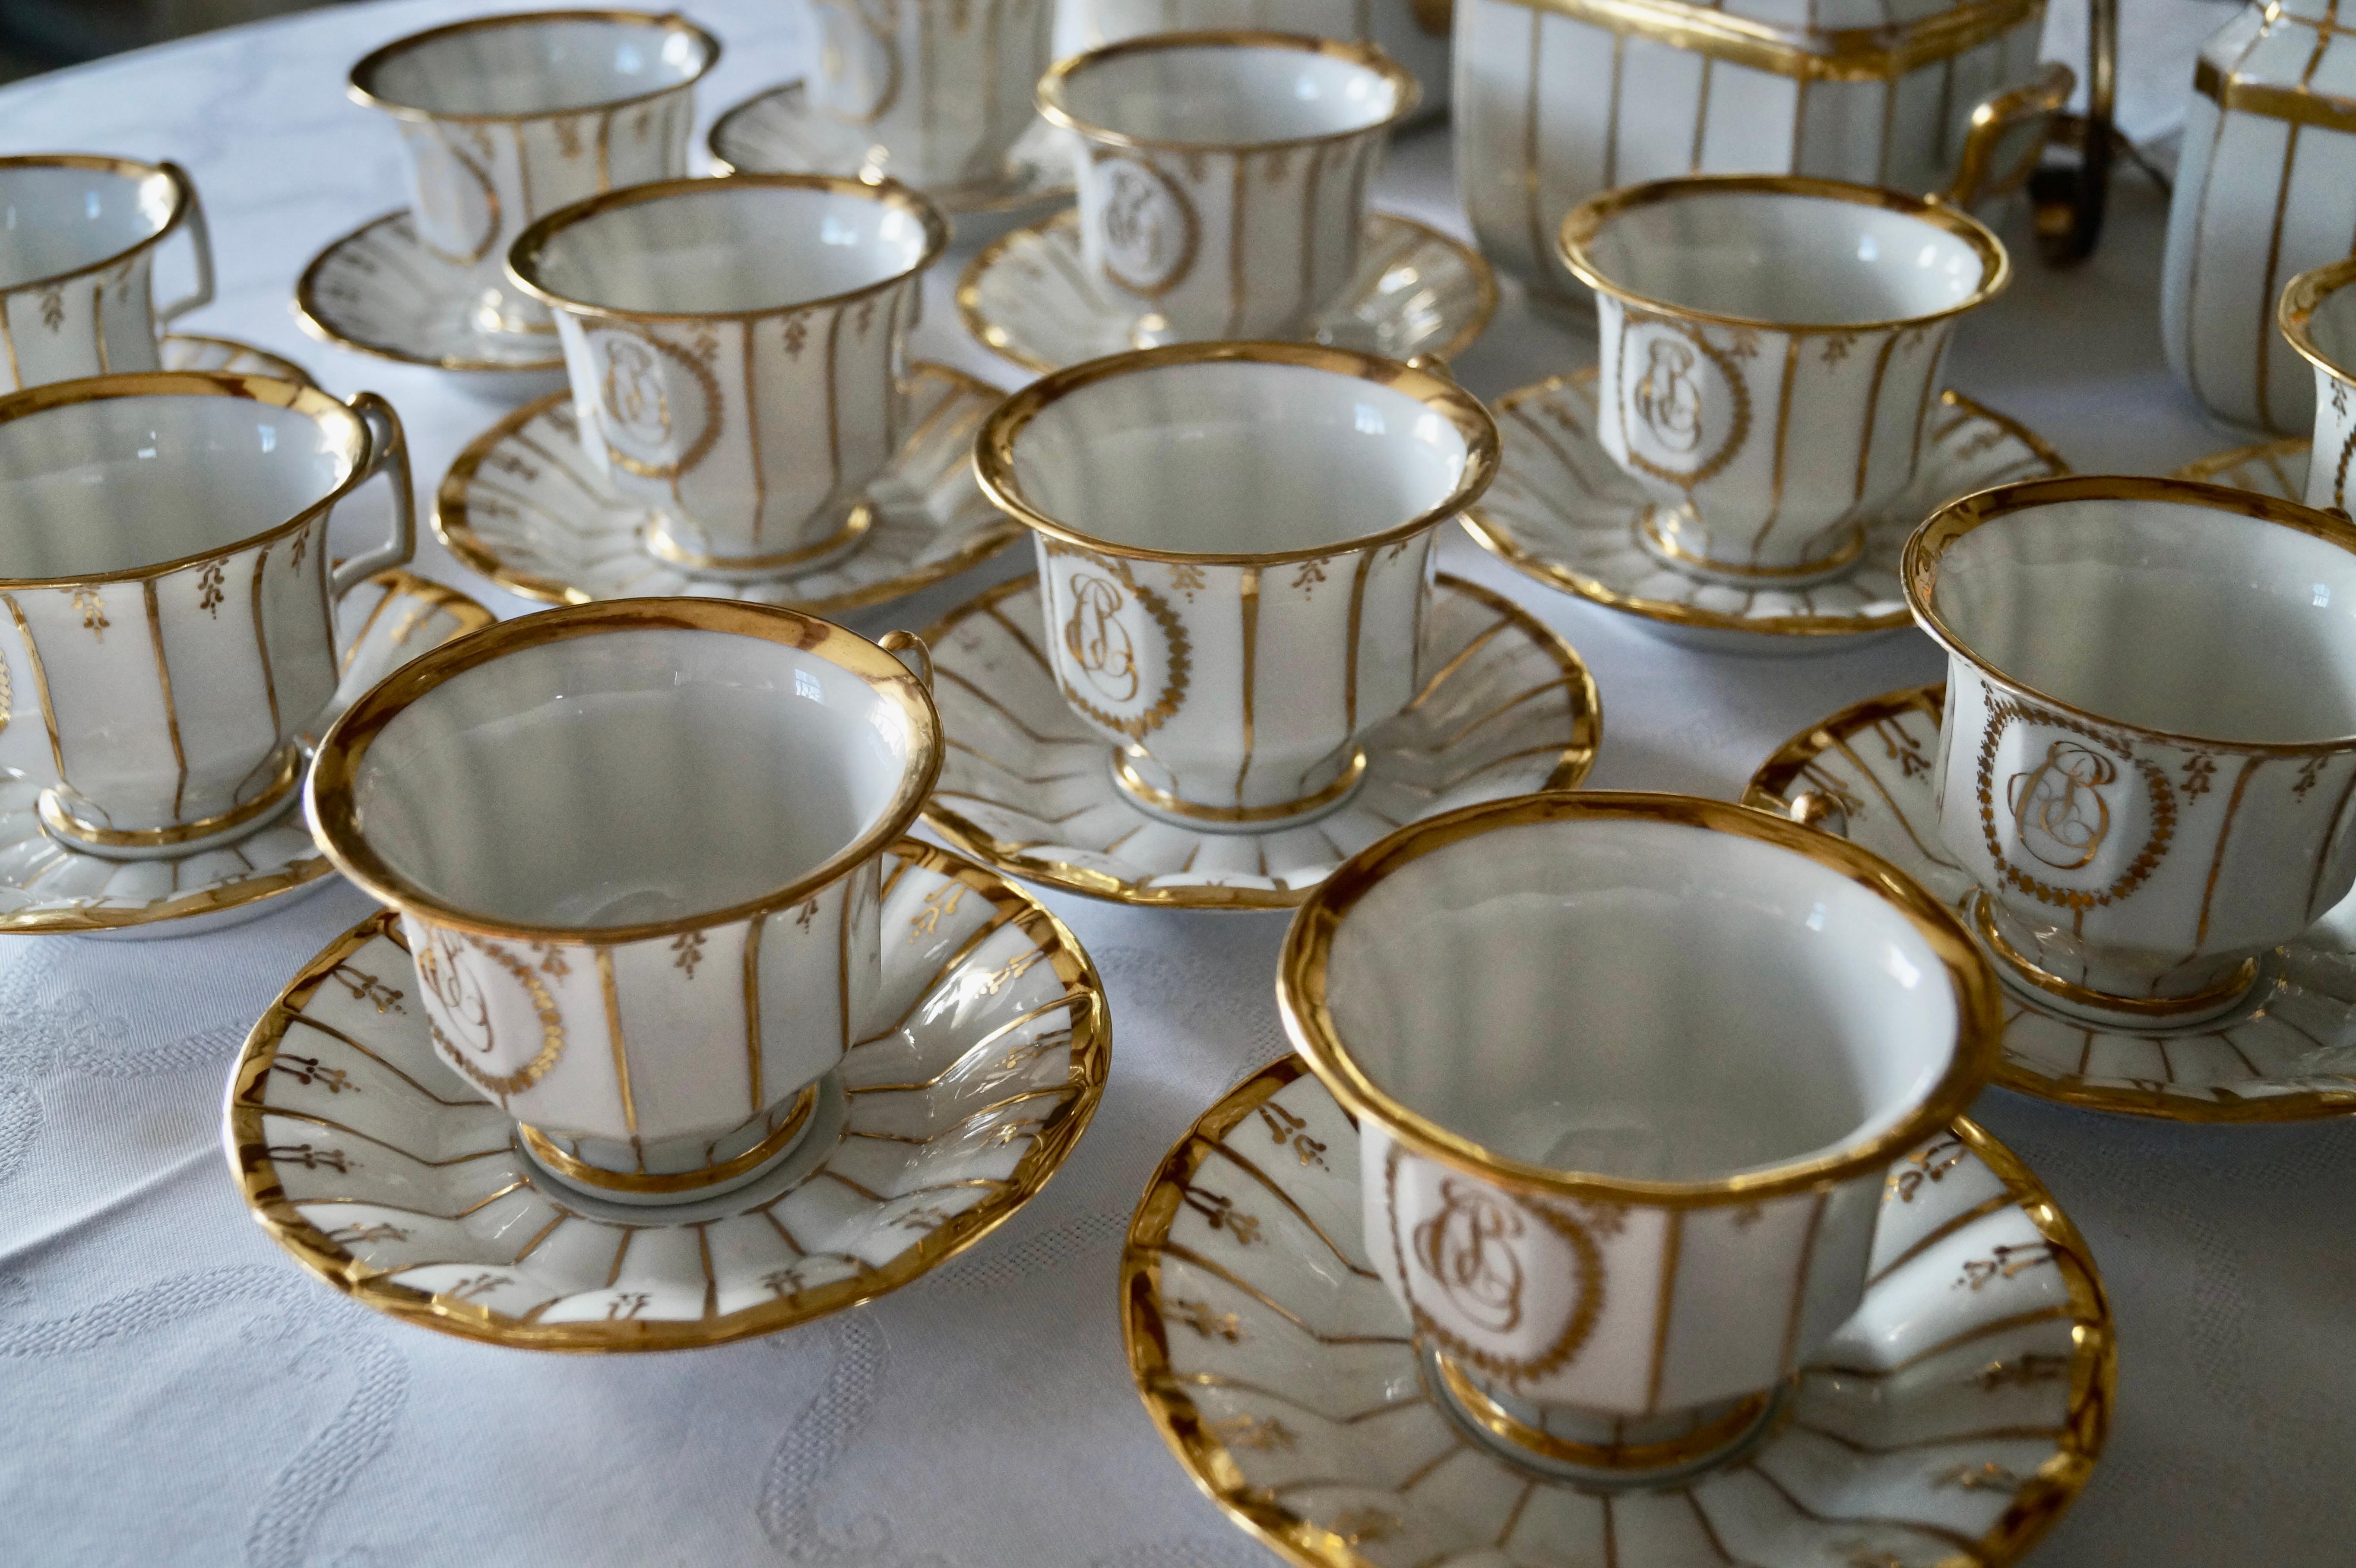 Superbe service à thé ancien en porcelaine de Paris de la période Louis Philippe 1830-1850.

La forme et le style épurés de la vaisselle sont caractéristiques de cette période. 

Magnifiquement décorées à la main avec des lignes de feuilles d'or,